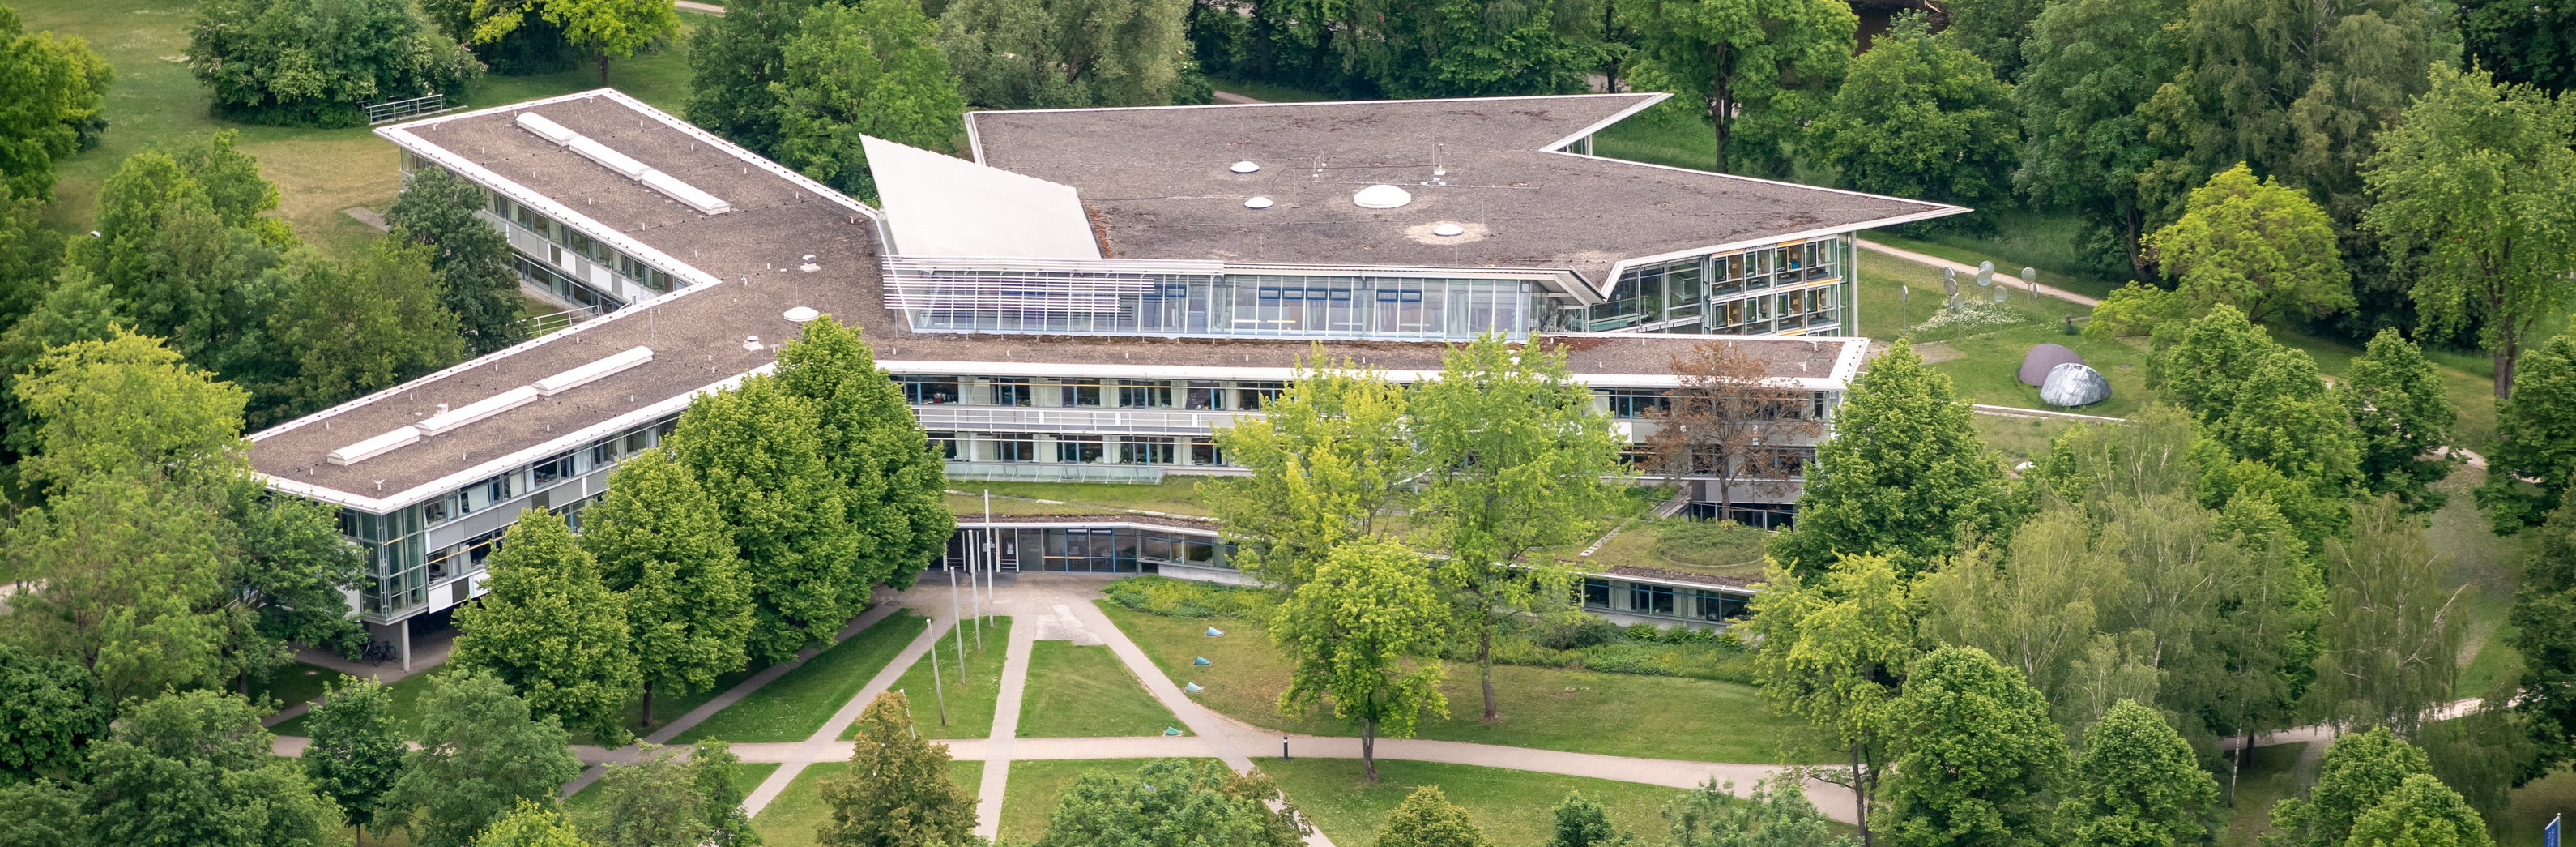 Universitätsbibliothek: Luftaufnahme der Zentralbibliothek